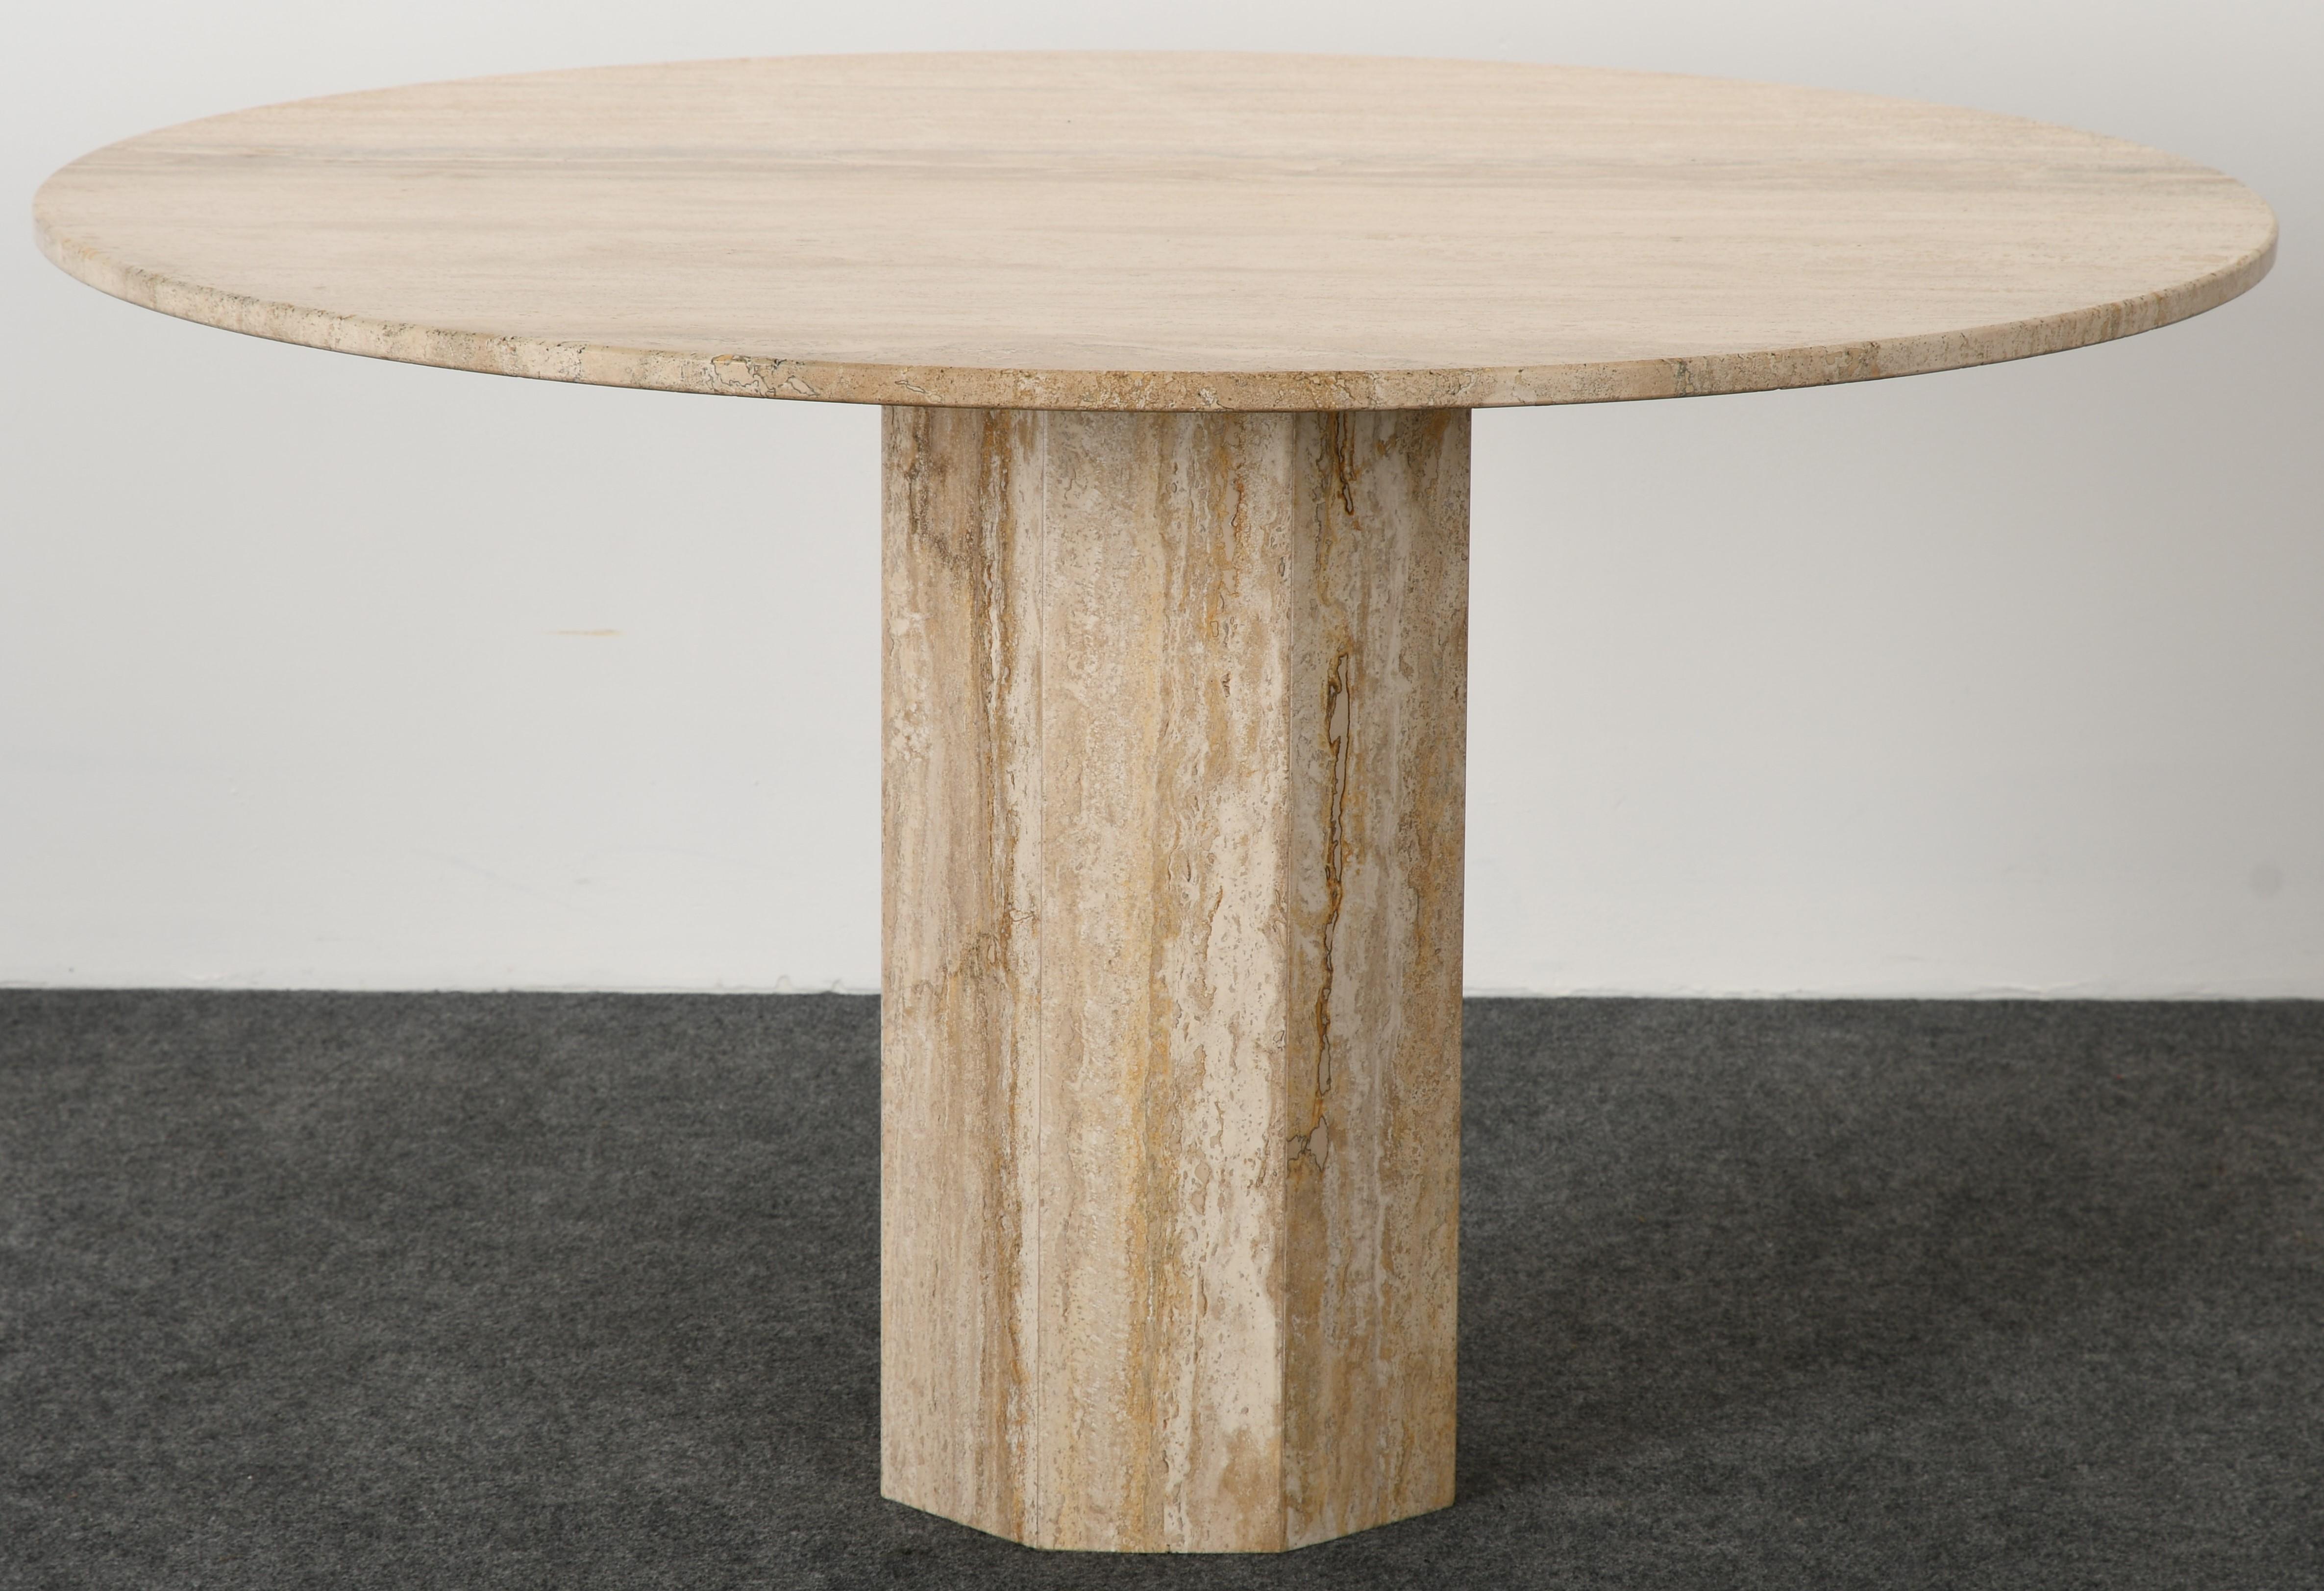 Superbe table à manger ronde en marbre travertin de style Roche Bobois avec une base octogonale. Cette table en marbre présente de belles veines sur toute sa surface. Une pièce idéale pour un intérieur minimaliste. En bon état:: avec une usure